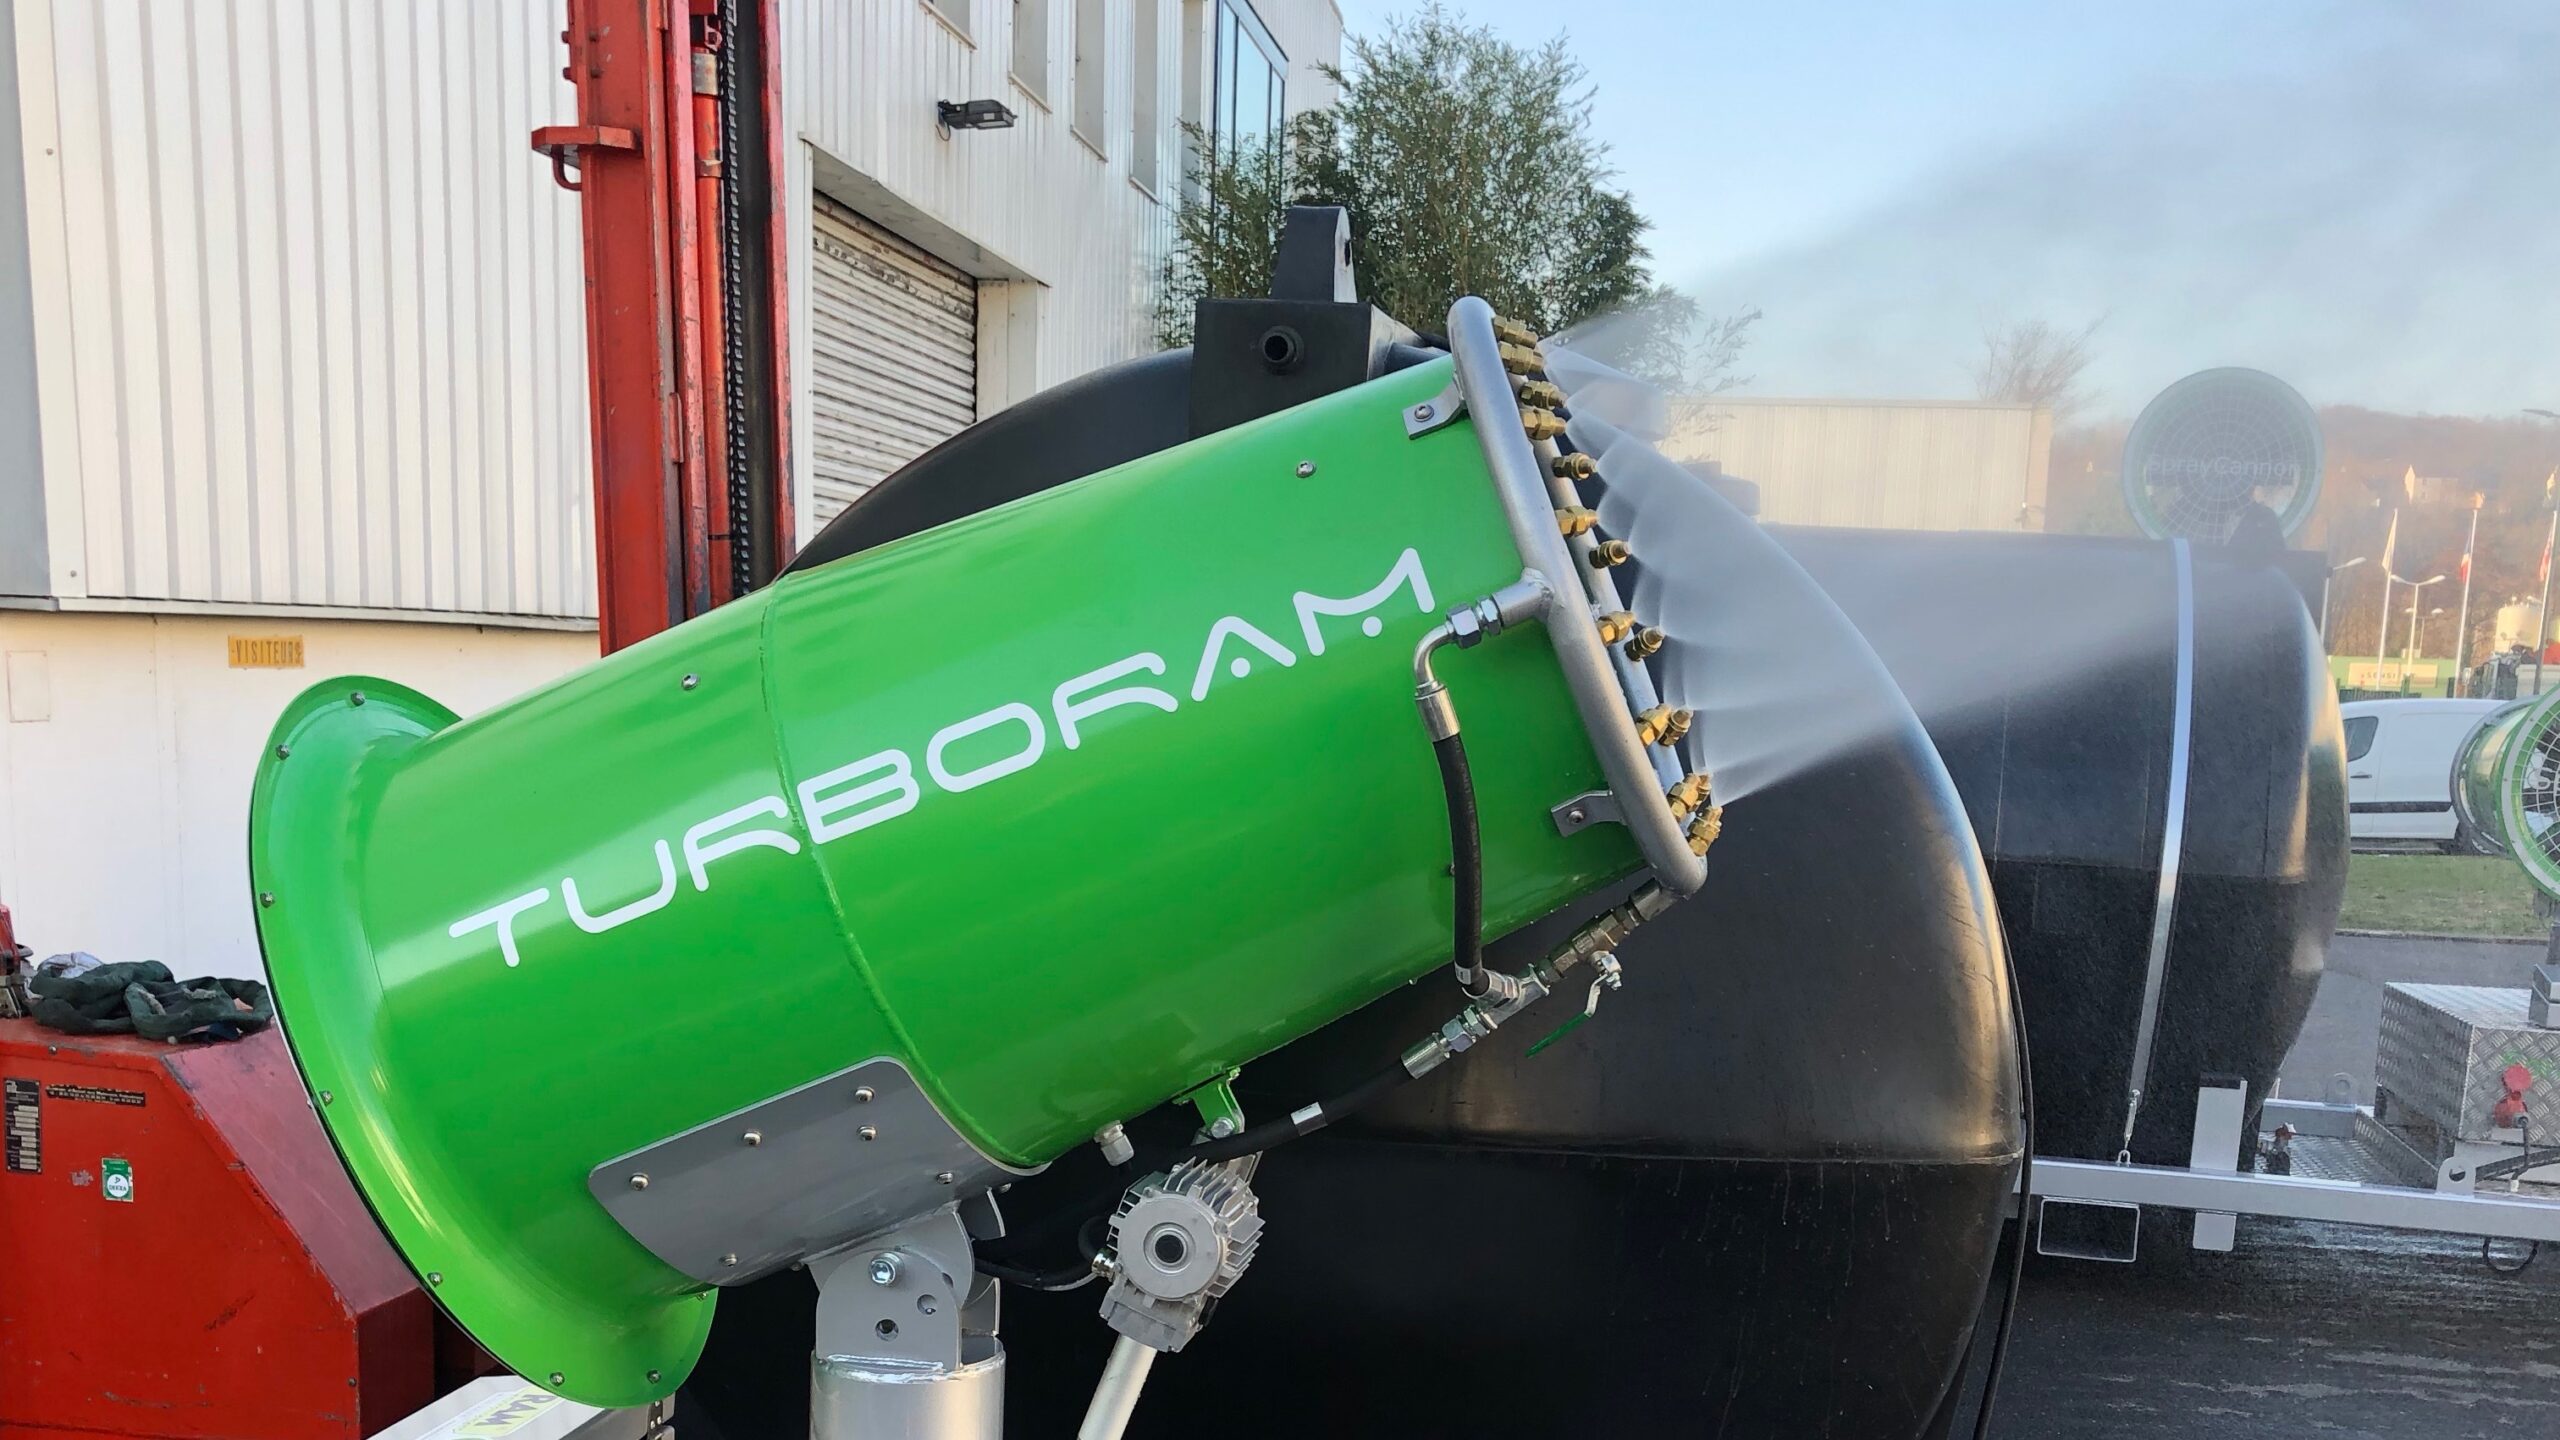 Le TURBORAM TRD40-SC est un brumisateur principalement destiné aux travaux de démolition, de dépollution, au BTP, et aux activités de recyclage. Avec cuve à eau